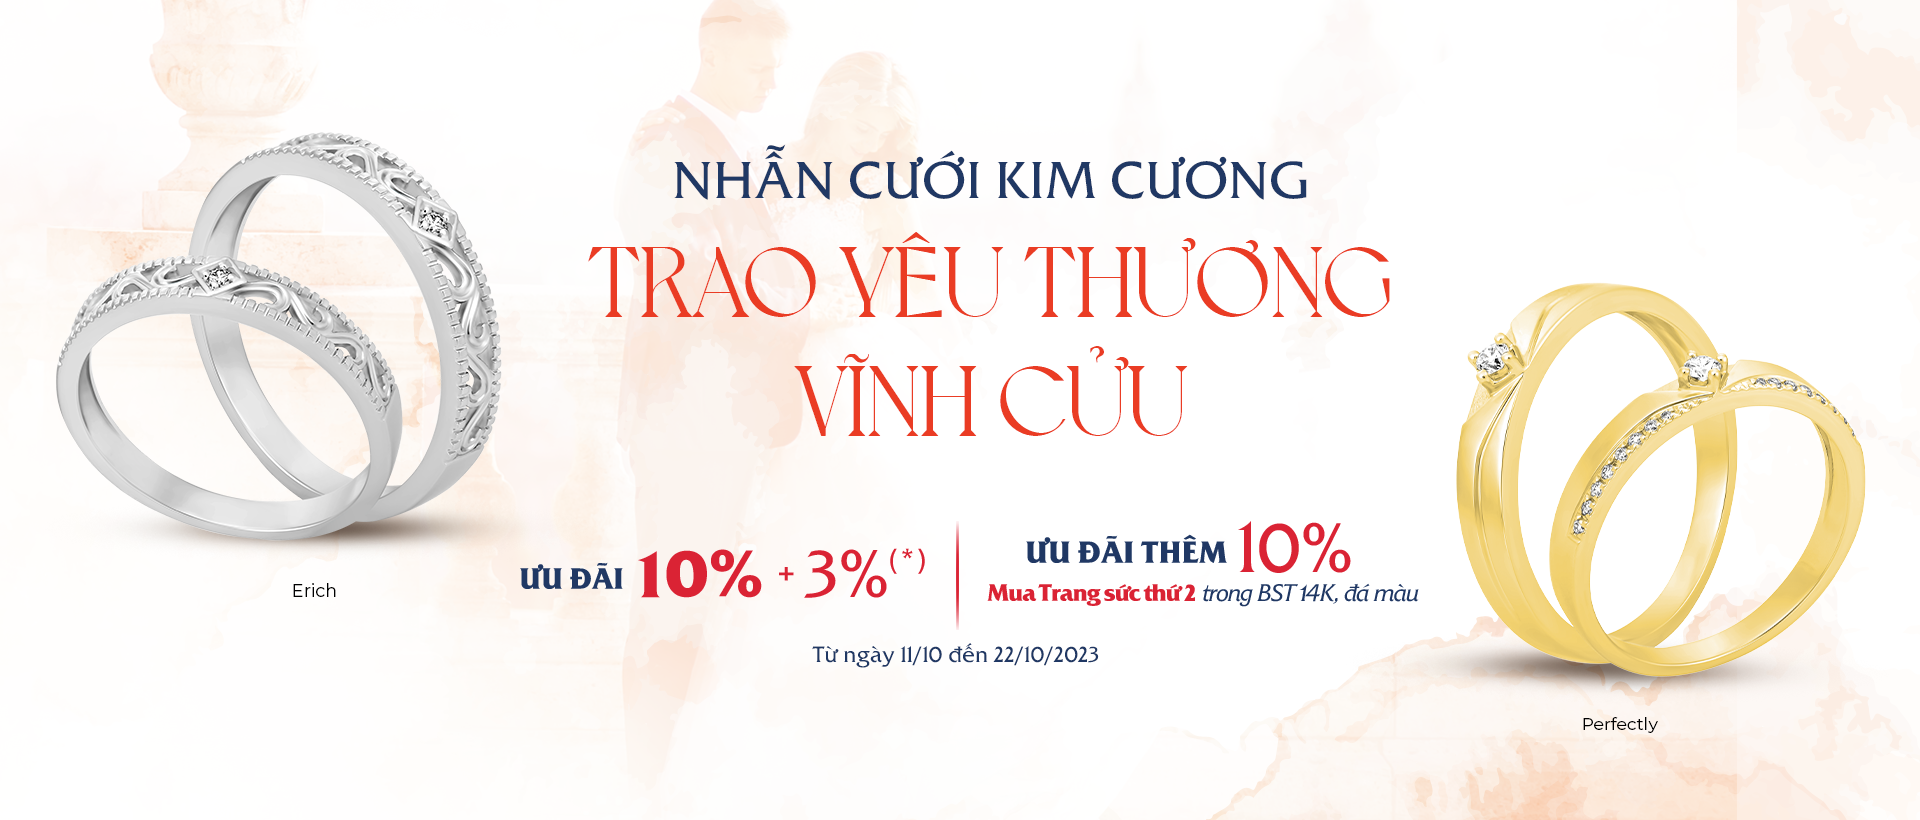 Top 10 tiệm vàng mua bán nhẫn cưới đẹp nhất ở Hà Nội - NiNiStore 2023